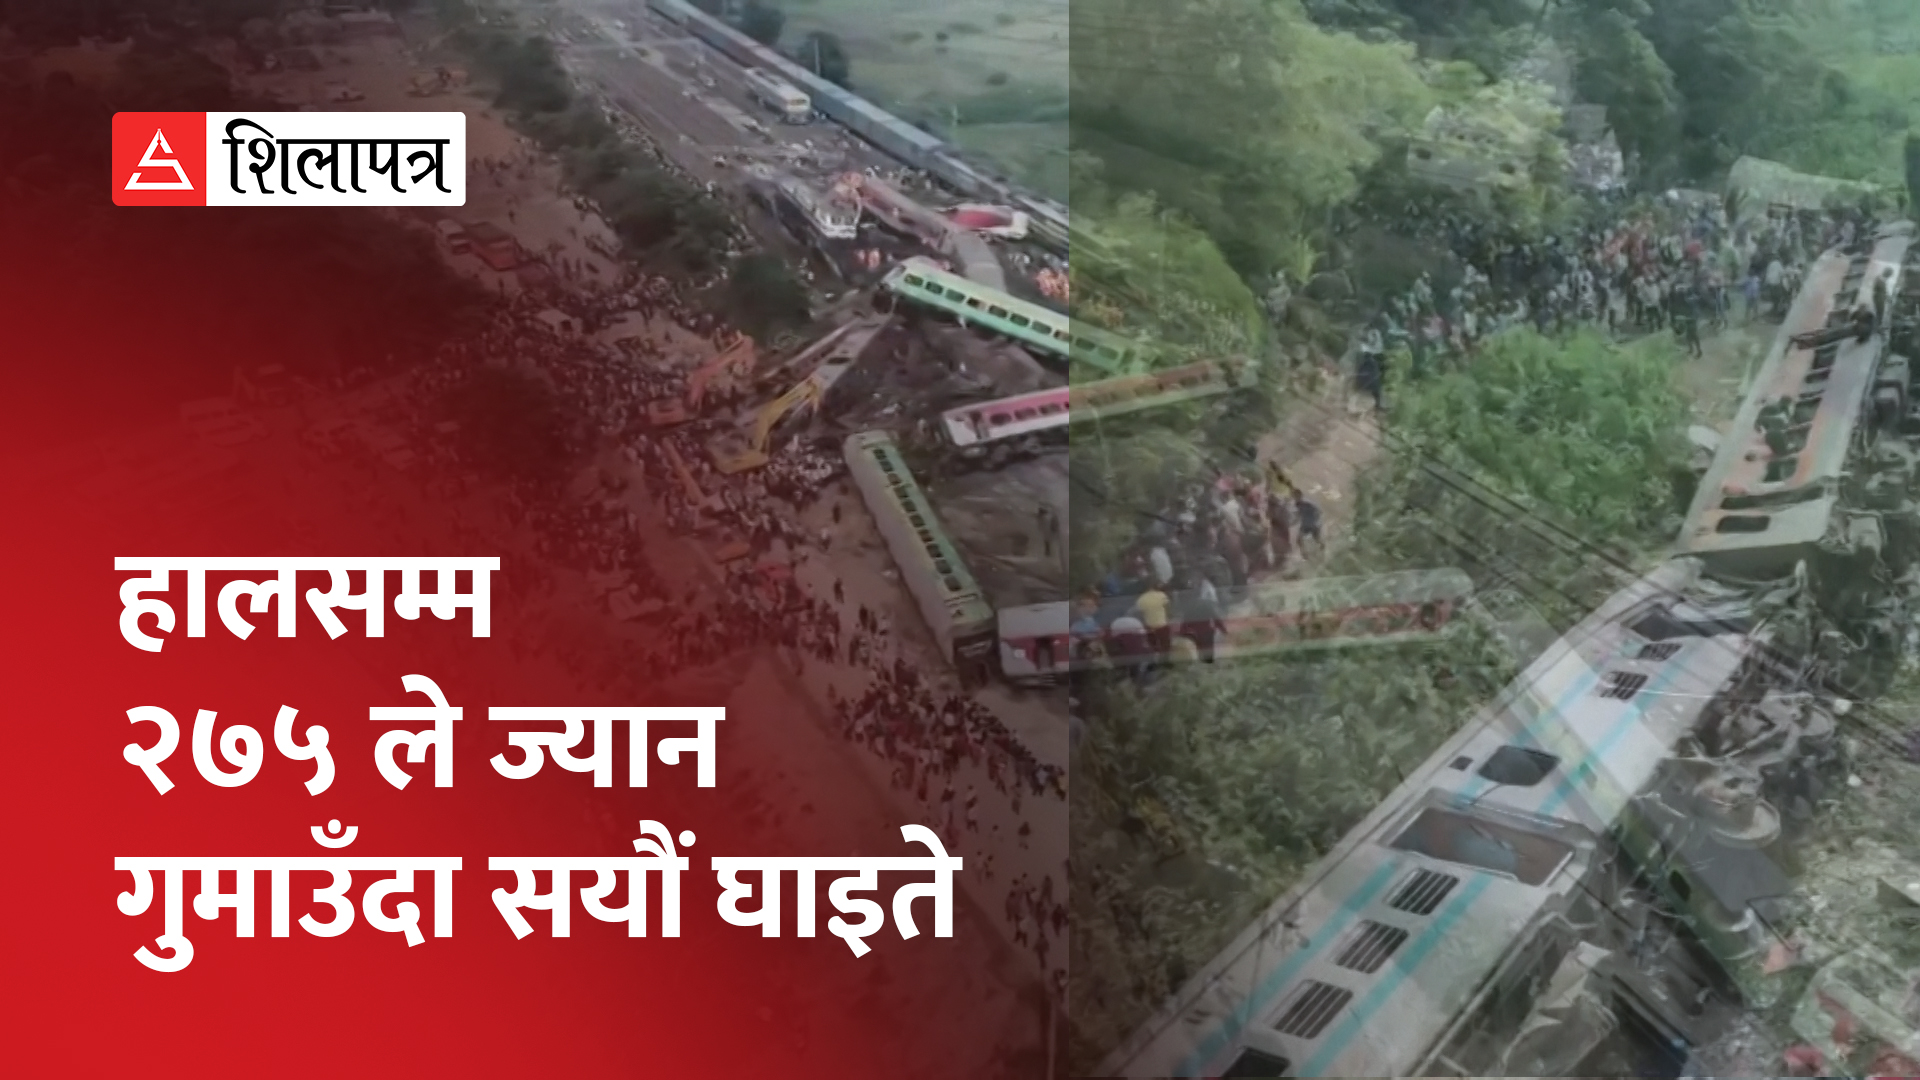 ओडिशा रेल दुर्घटनाको मुख्य कारण संकेत प्रणालीमा खराबी, षड्यन्त्रको पनि आशंका (भिडियो)